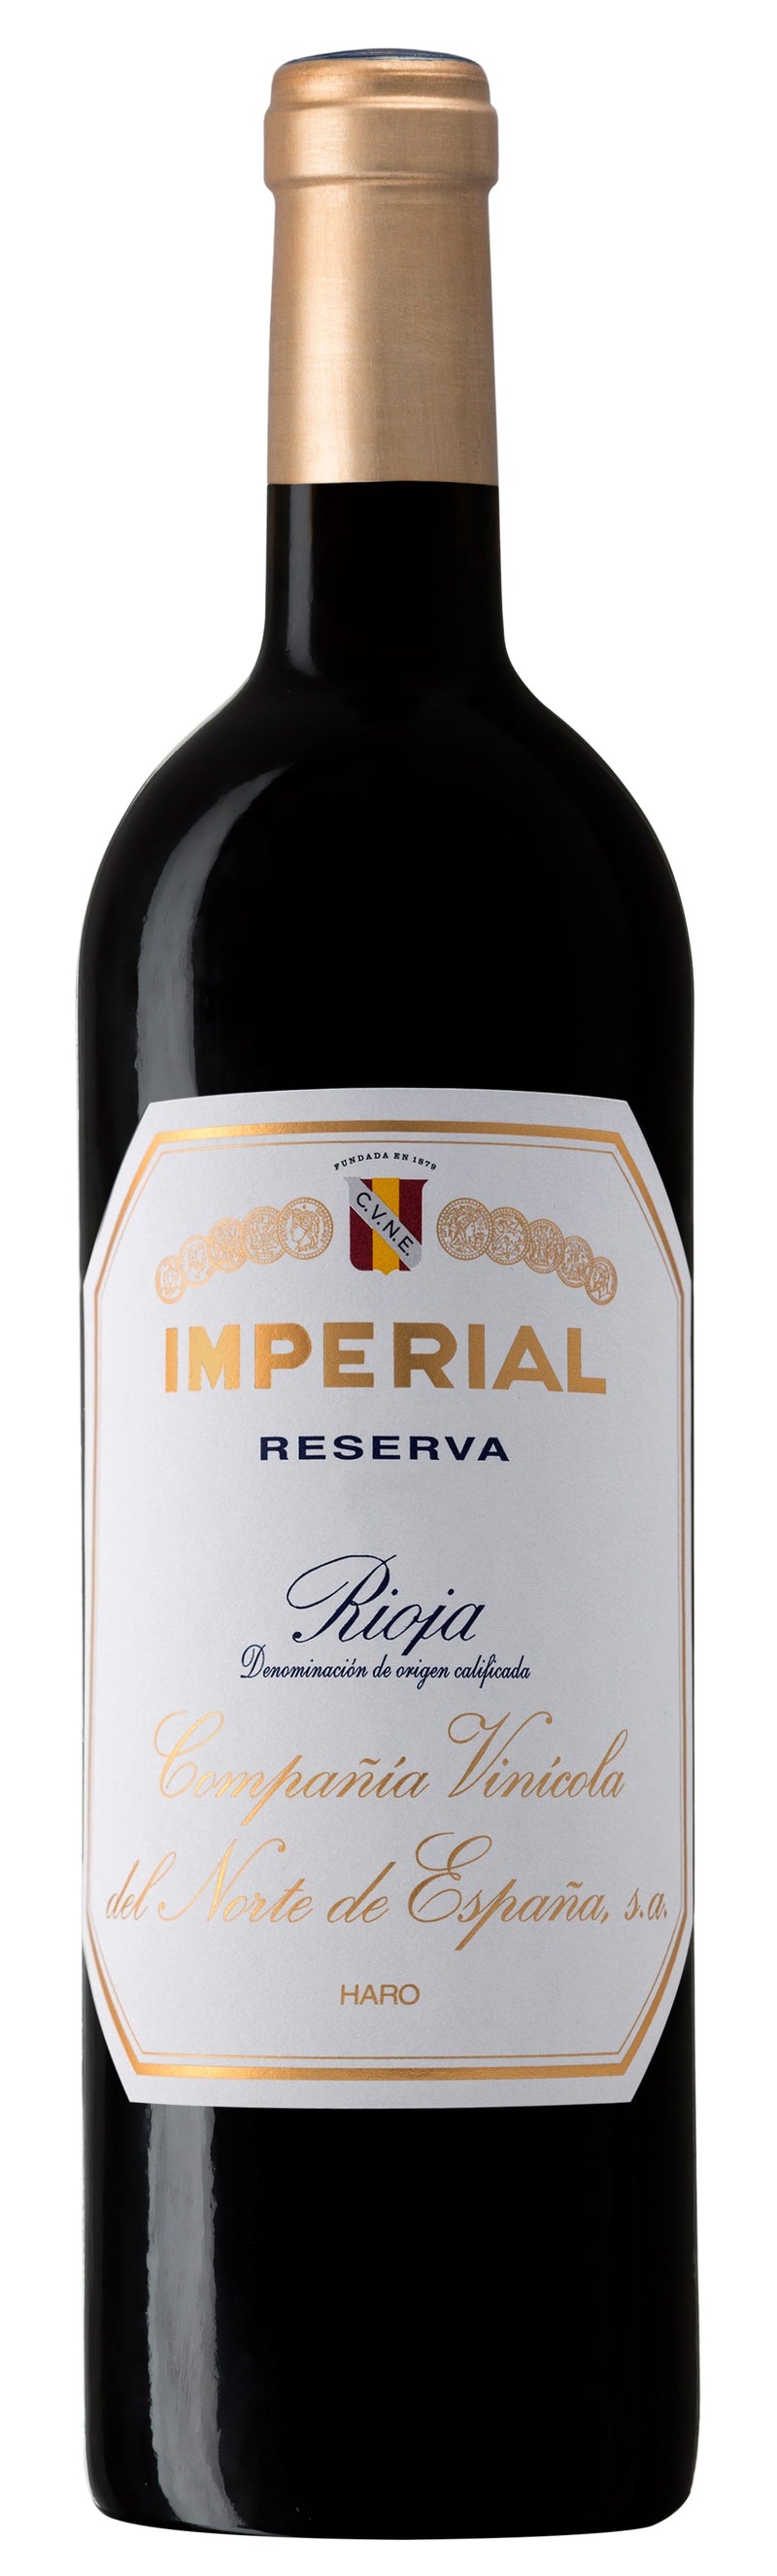 Cune Imperial Reserva Rioja 2017 750ml